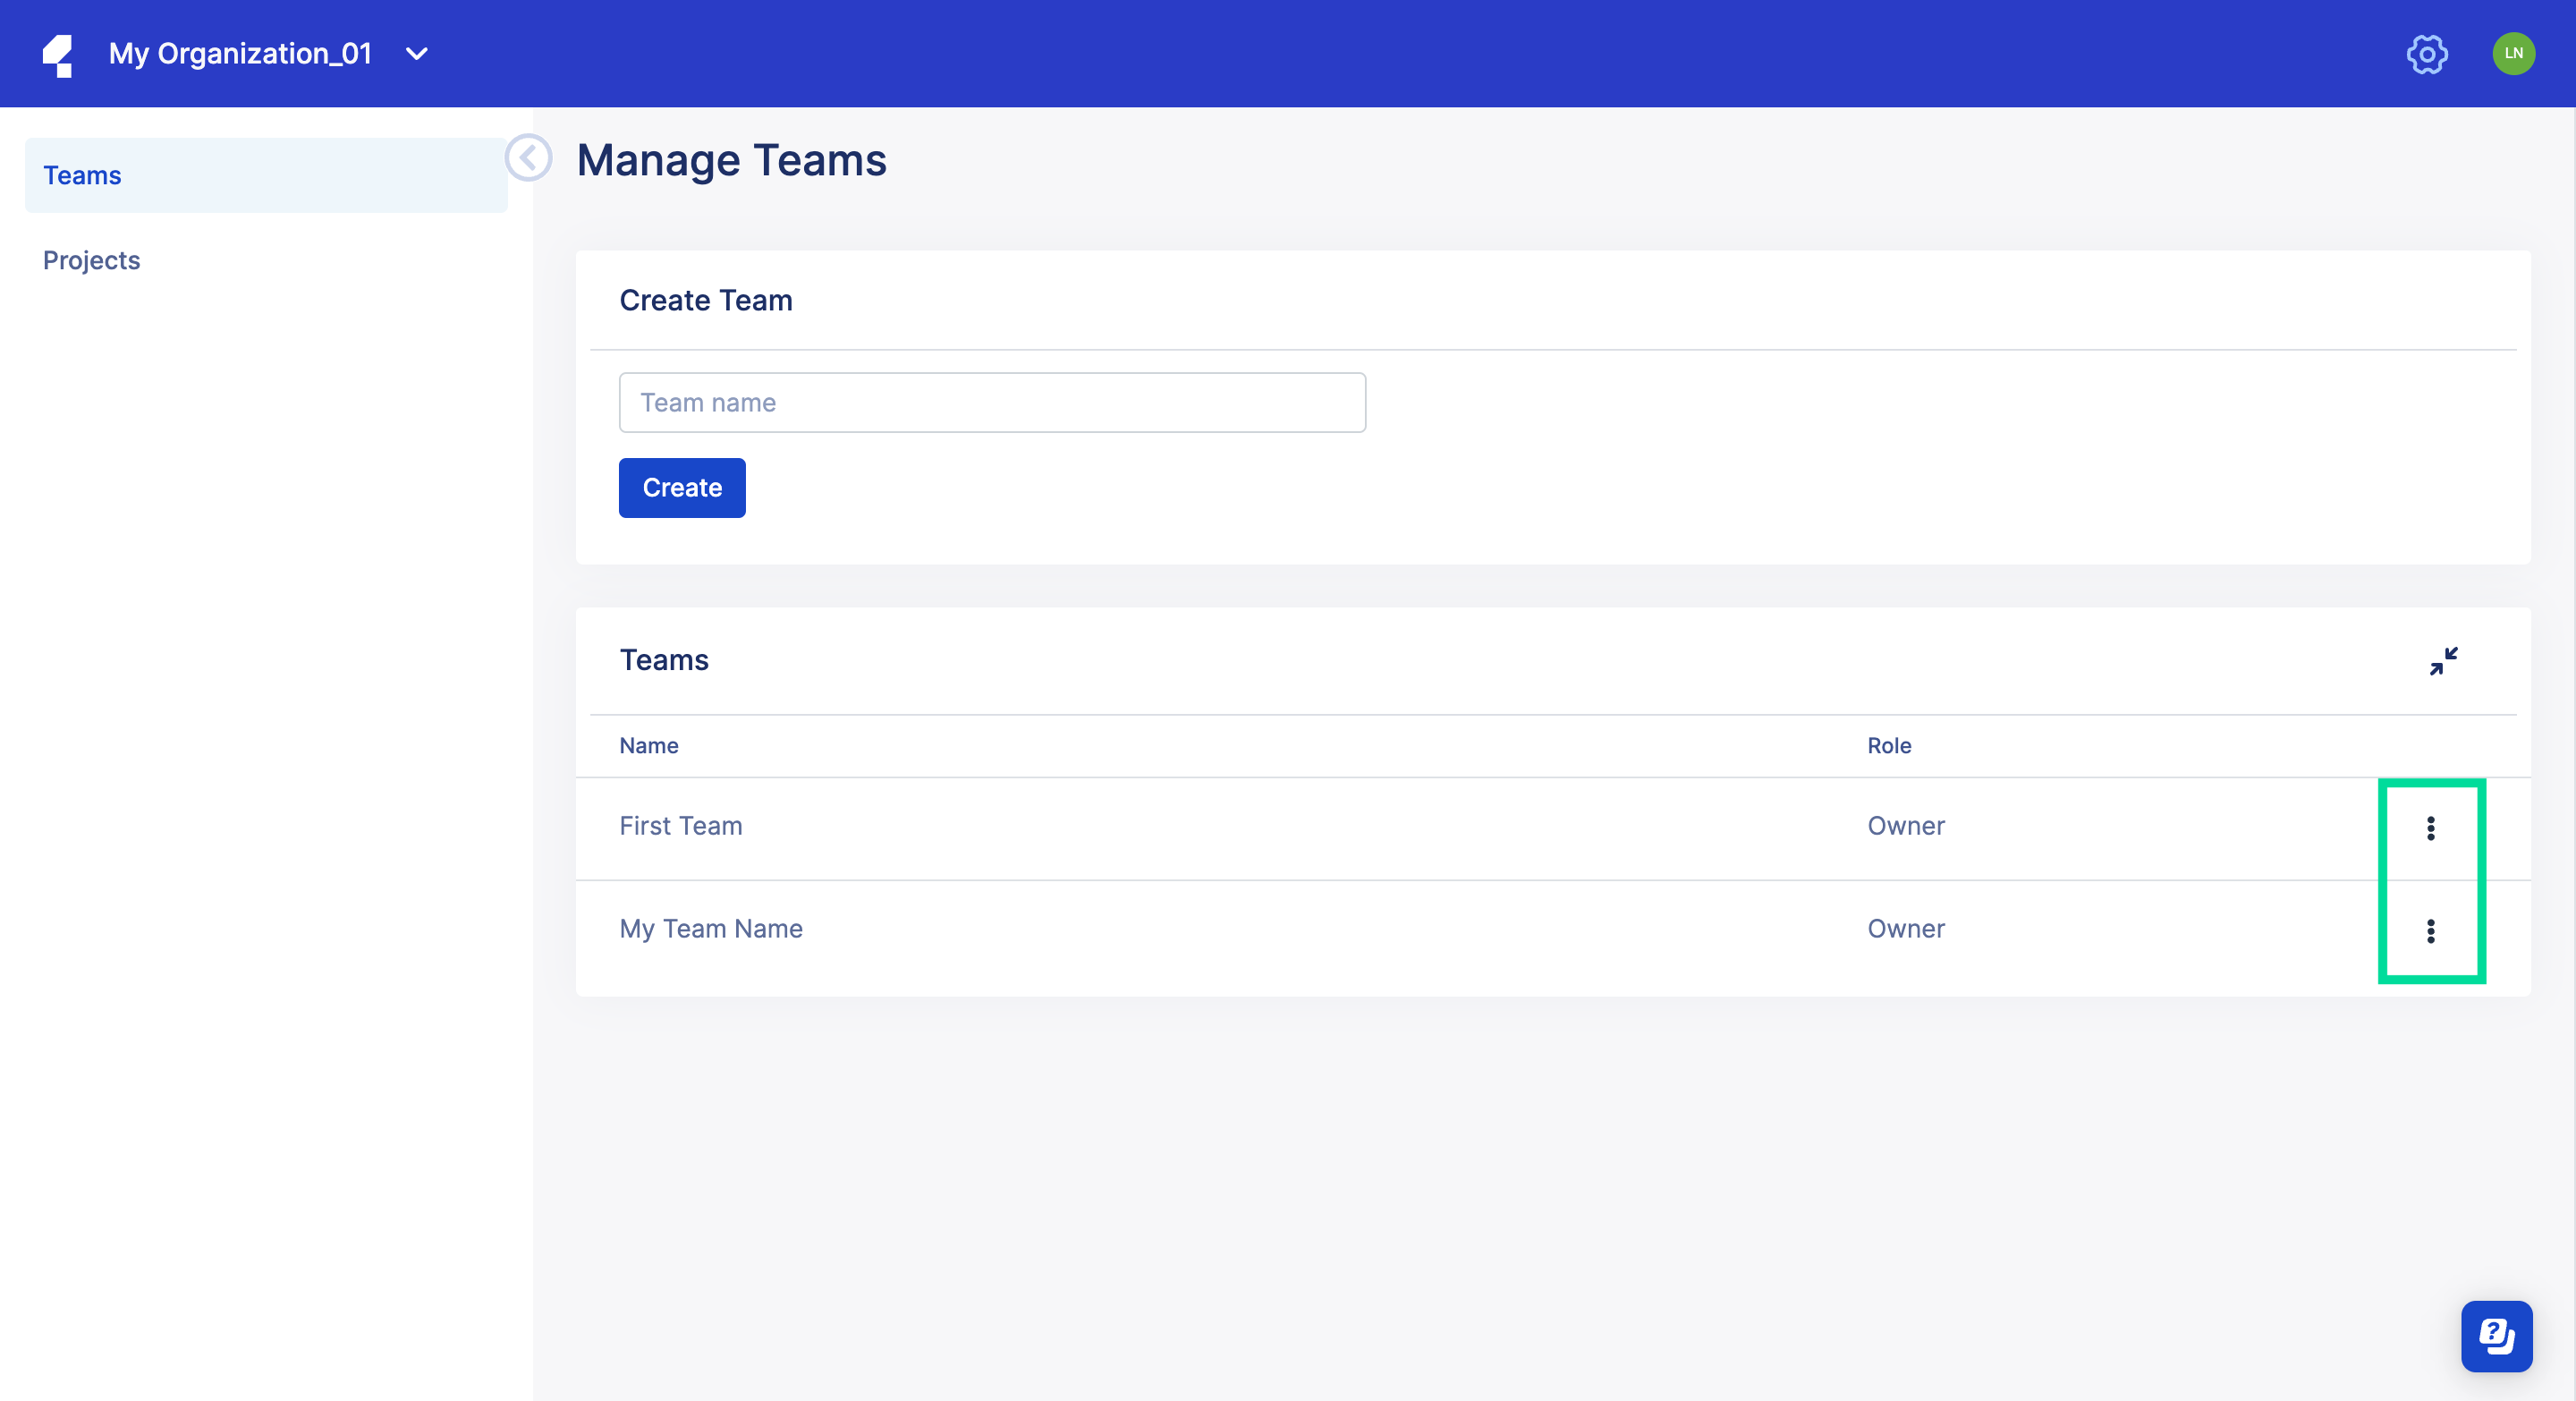 Manage Teams page